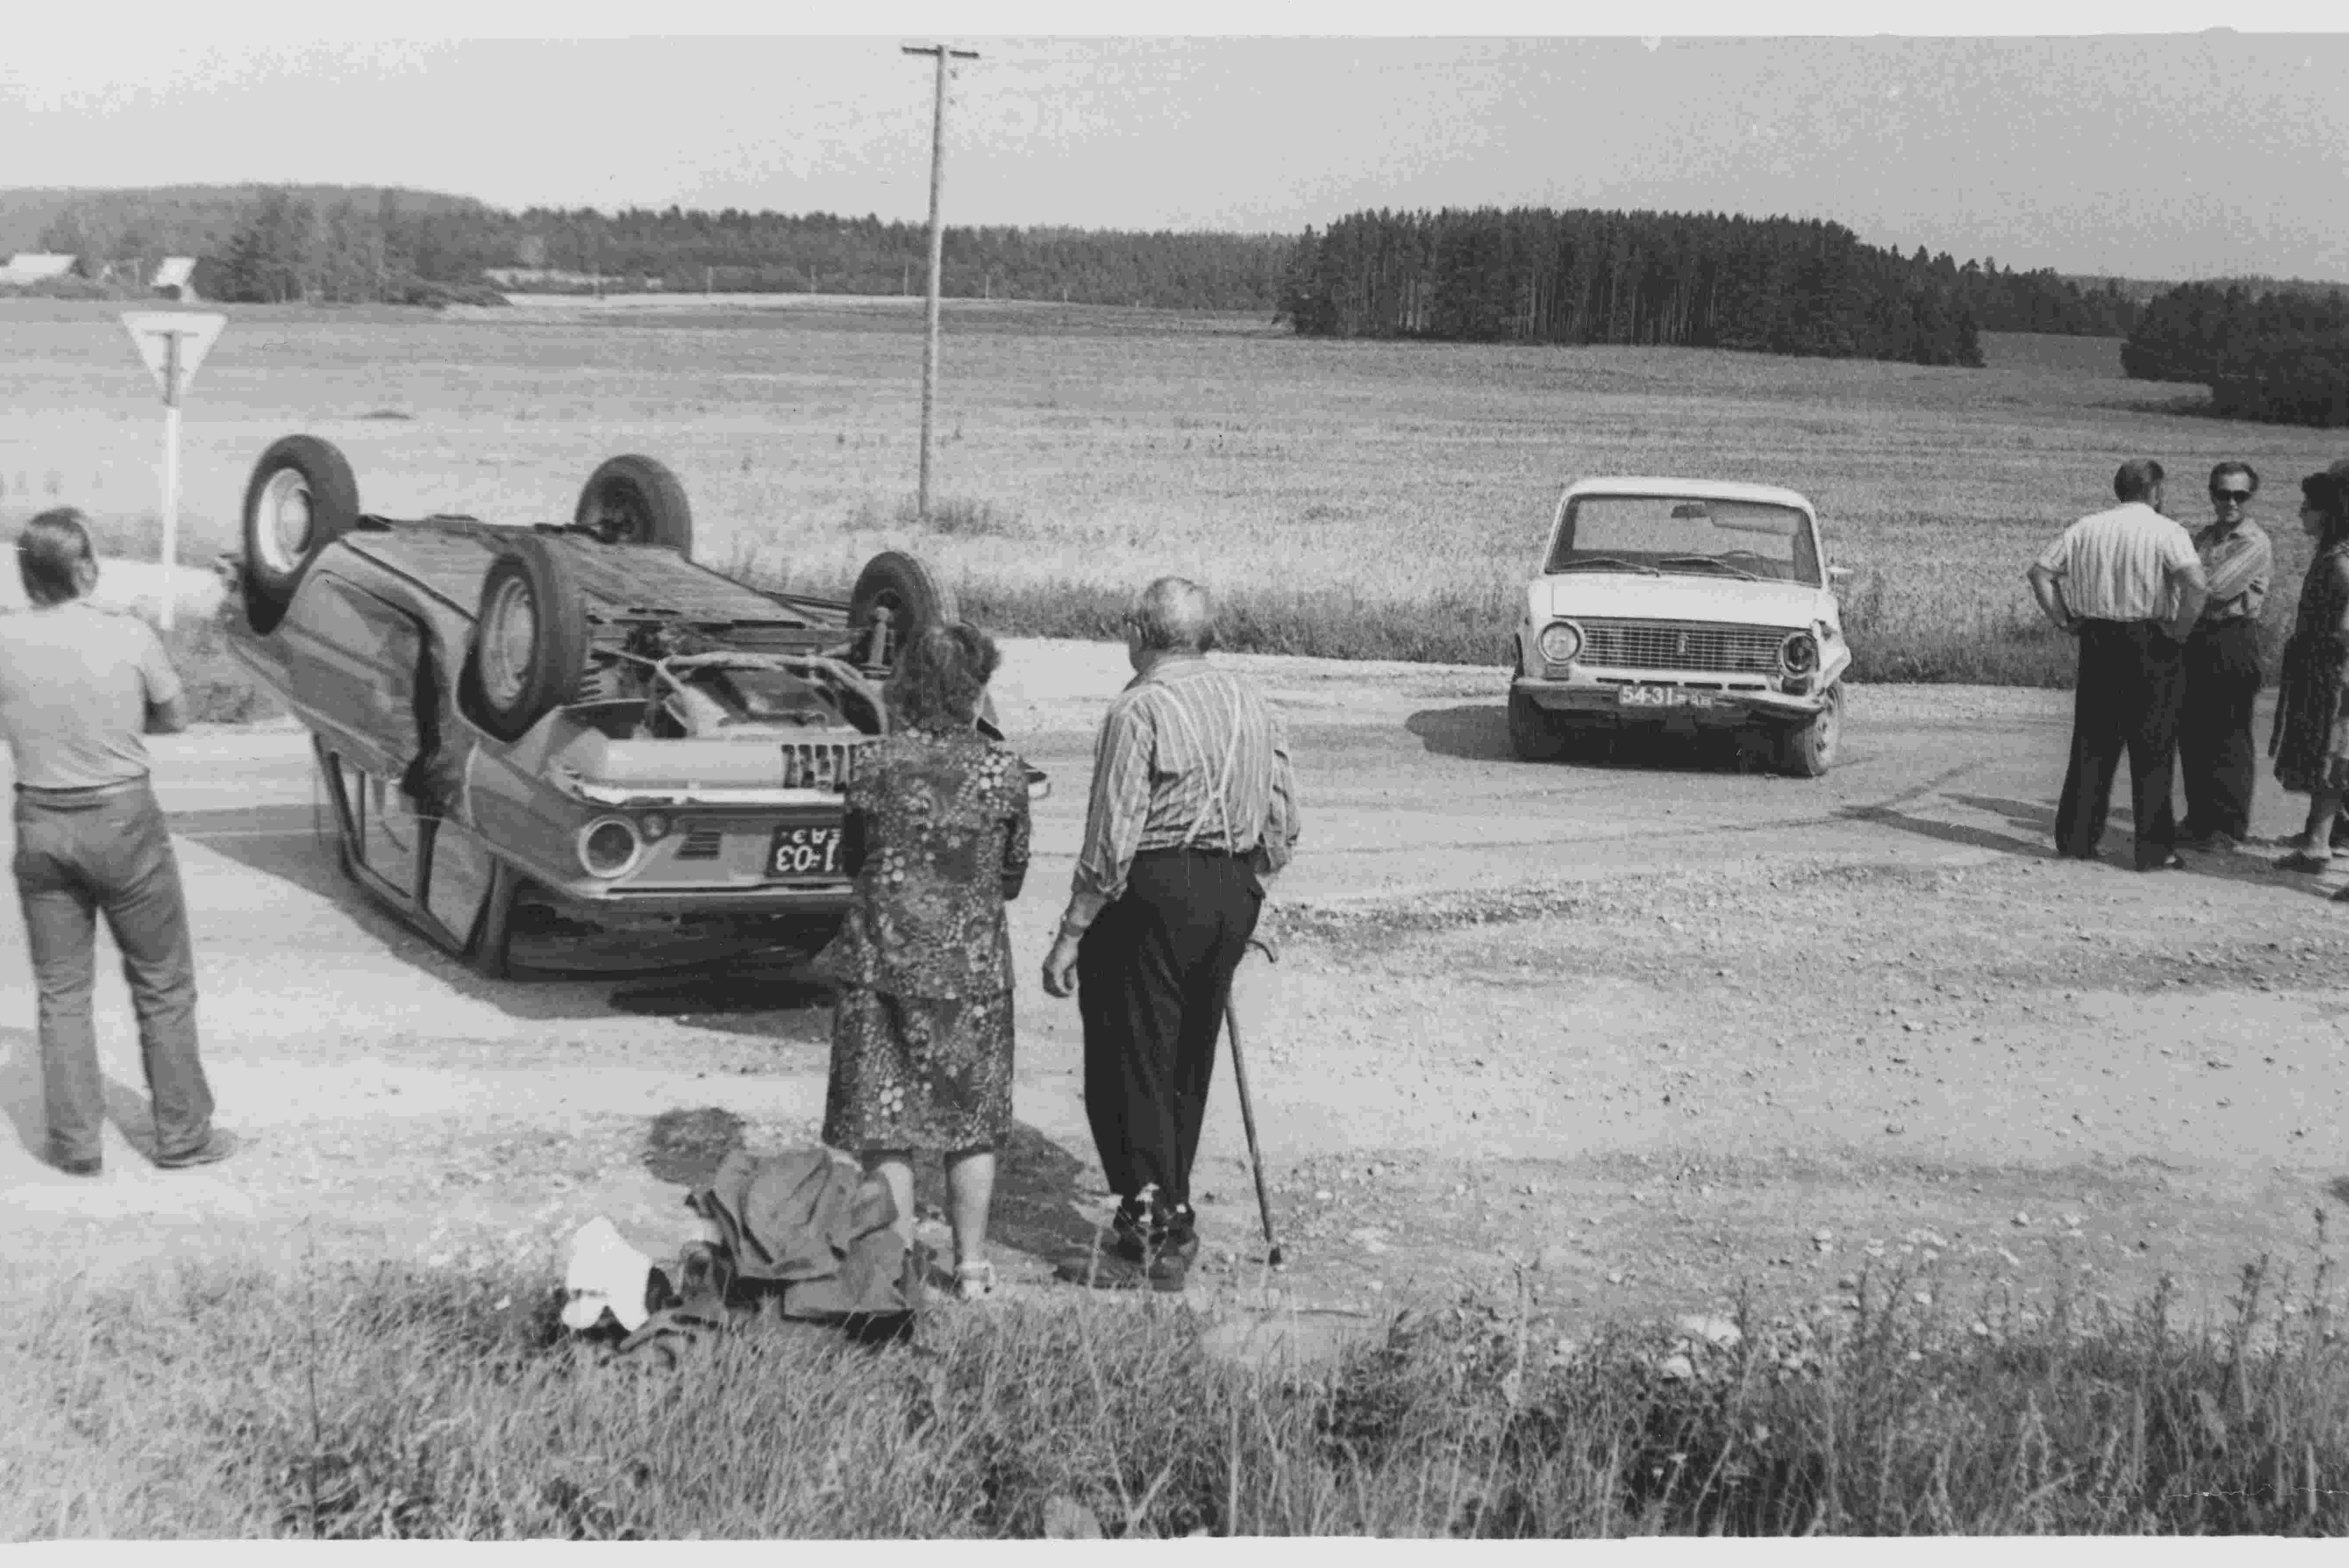 Üks paljudest: liiklusõnnetus Tartu–Kambja teeristil 1981. aastal. Seekord ilma inimohvriteta (Foto: Eesti Rahva Muuseum).